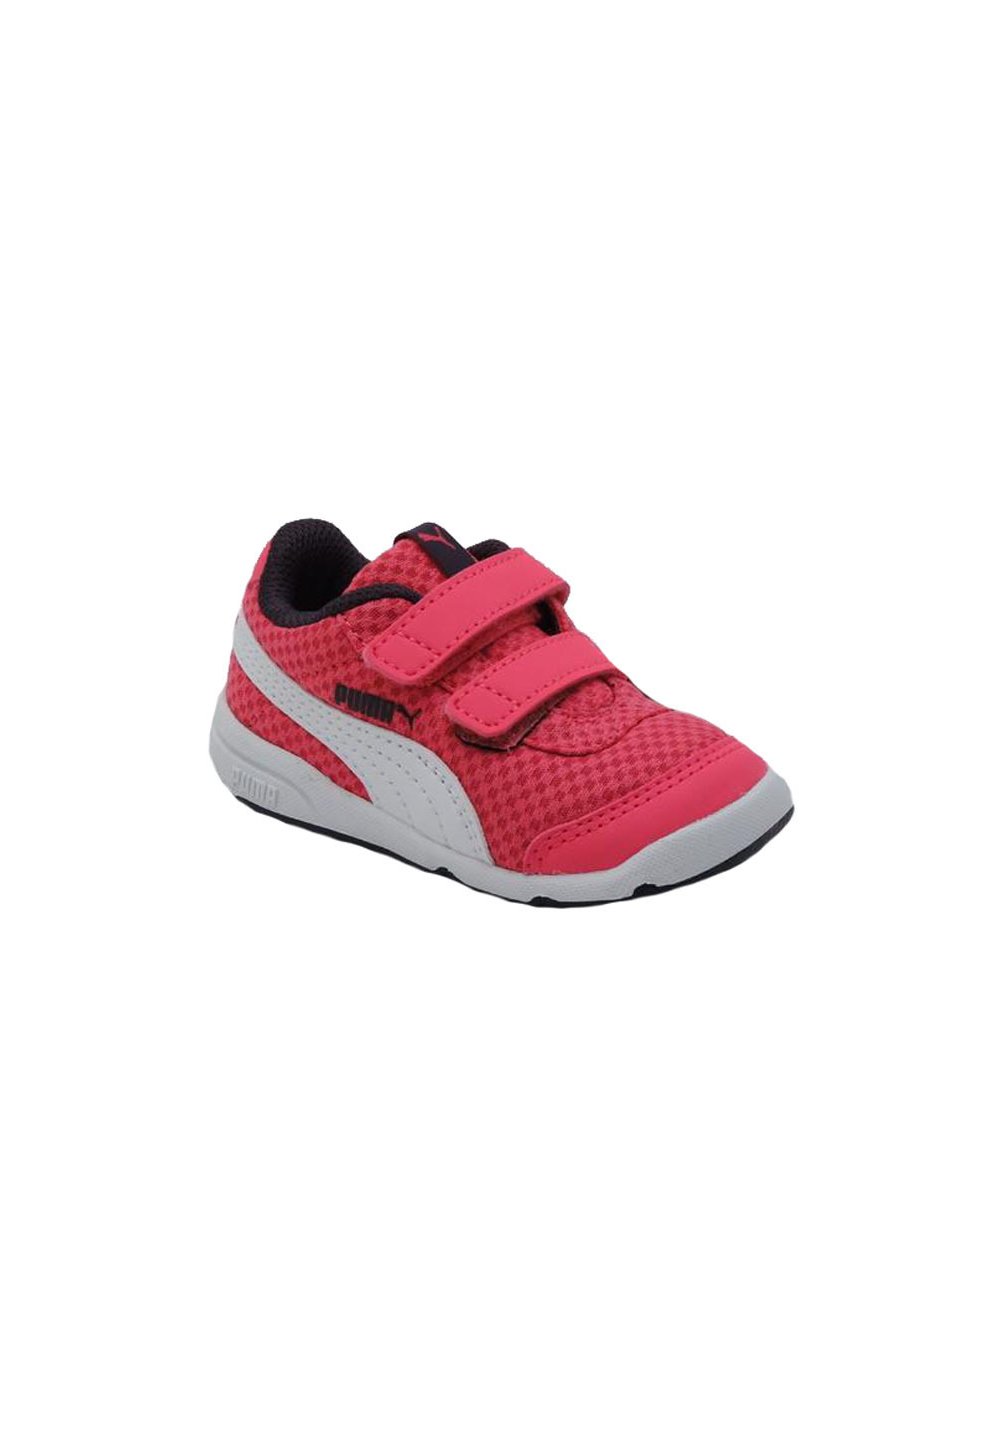 Pantofi sport, Puma, roz